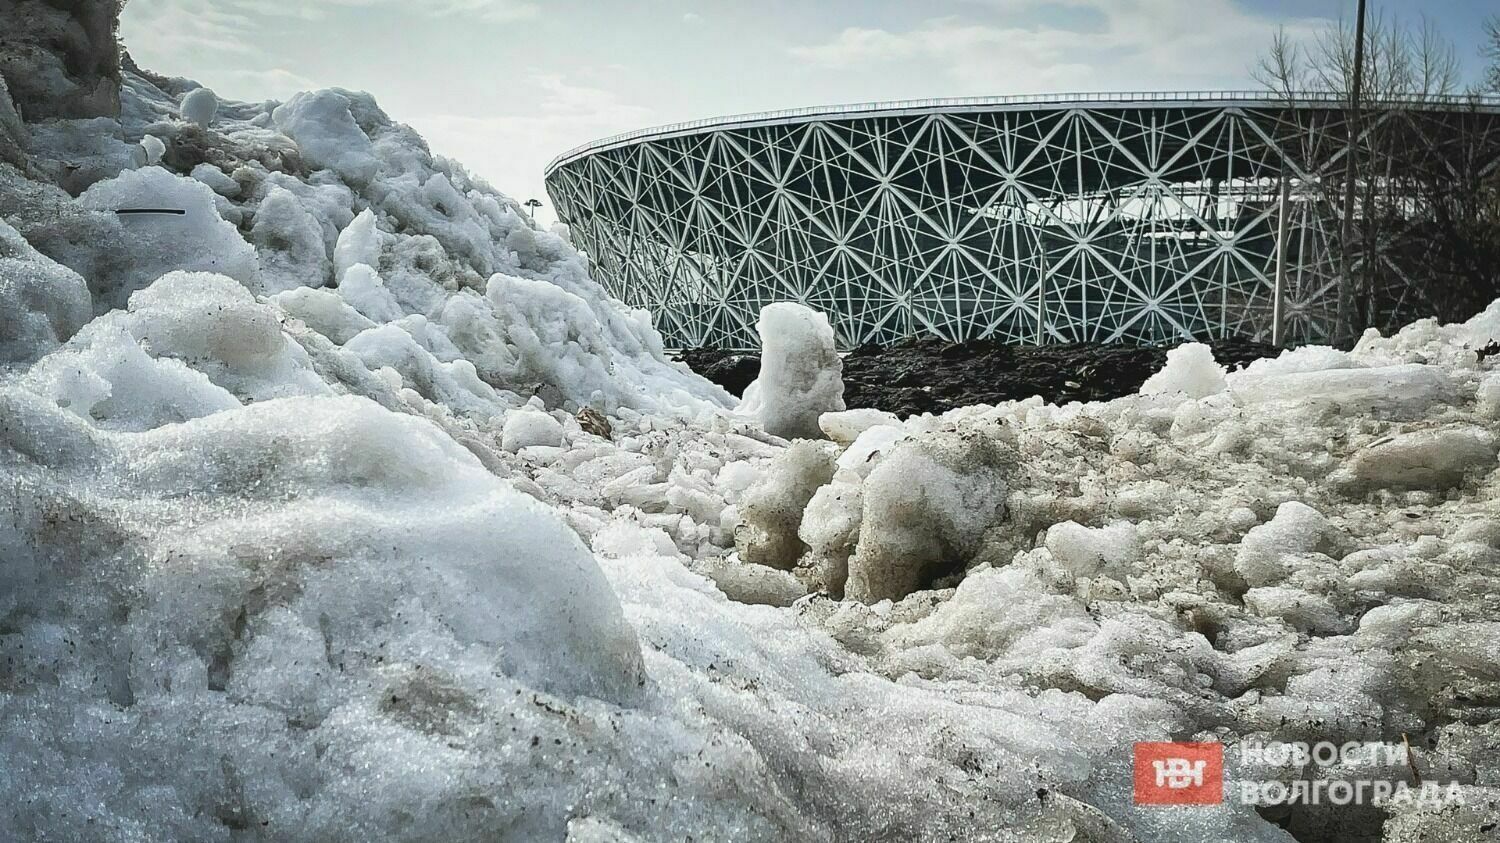 Топить за прошлогодний снег: мэрия Волгограда ищет машину для плавки снега